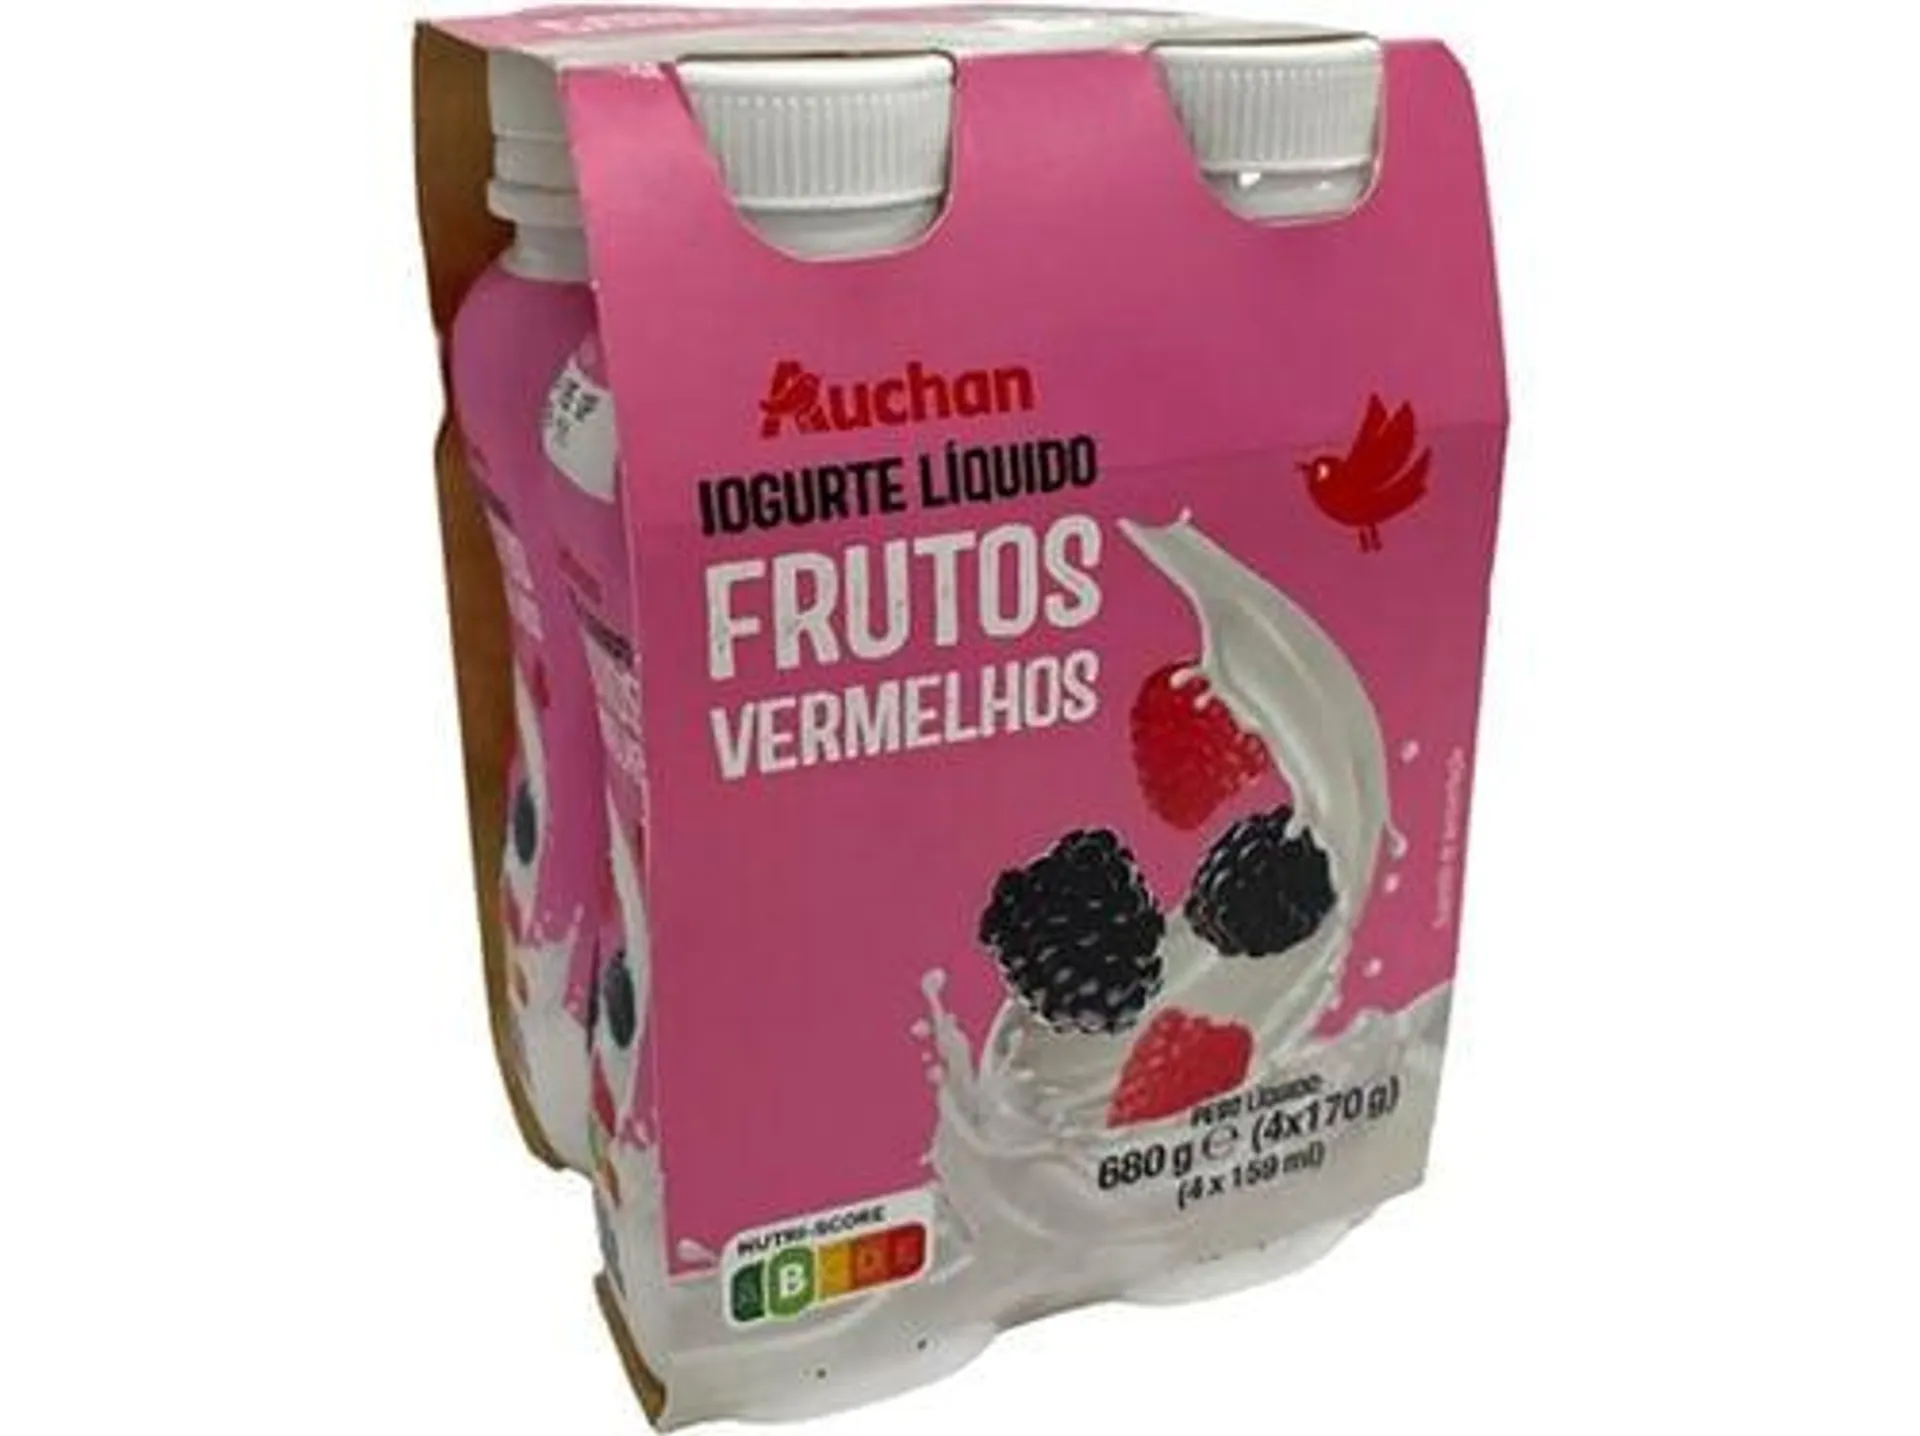 iogurte liquido auchan frutos vermelhos 4x170g